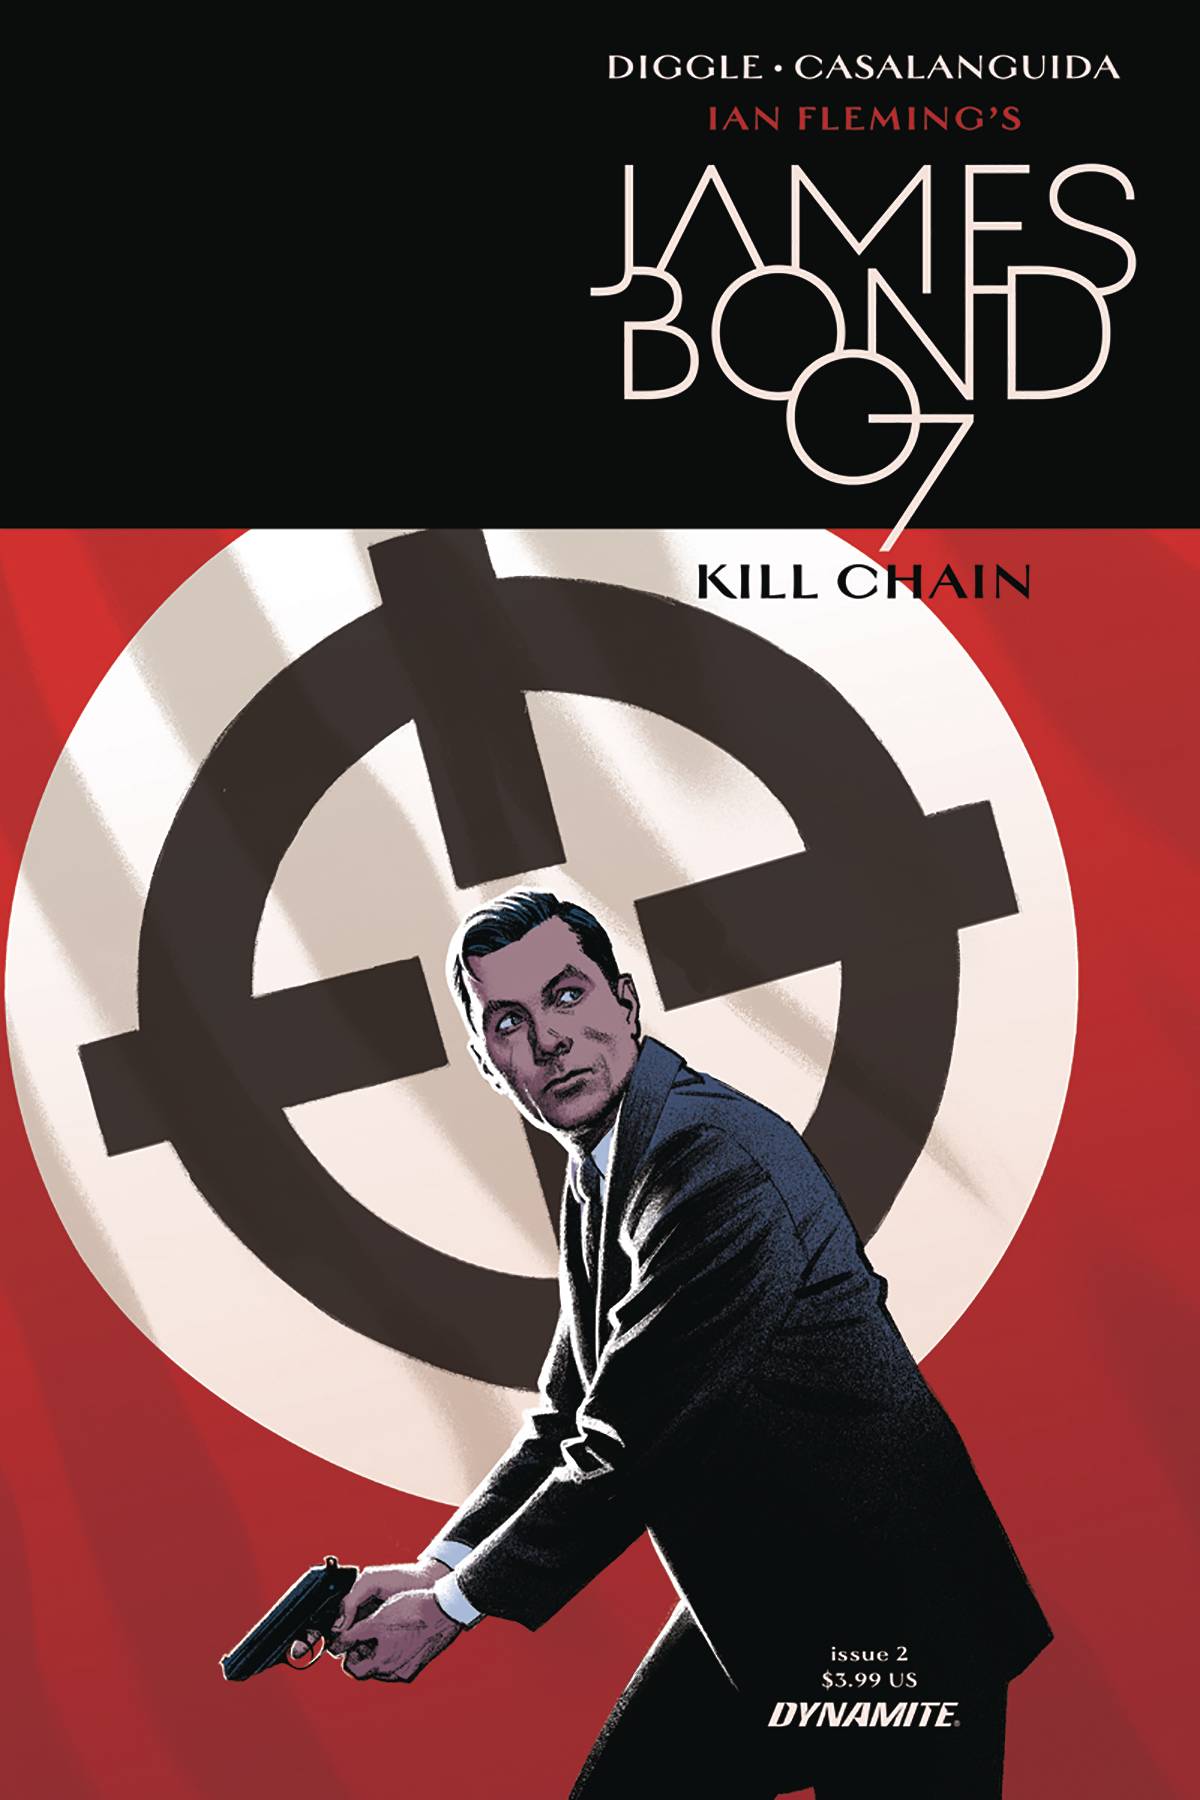 JAMES BOND: KILL CHAIN#2